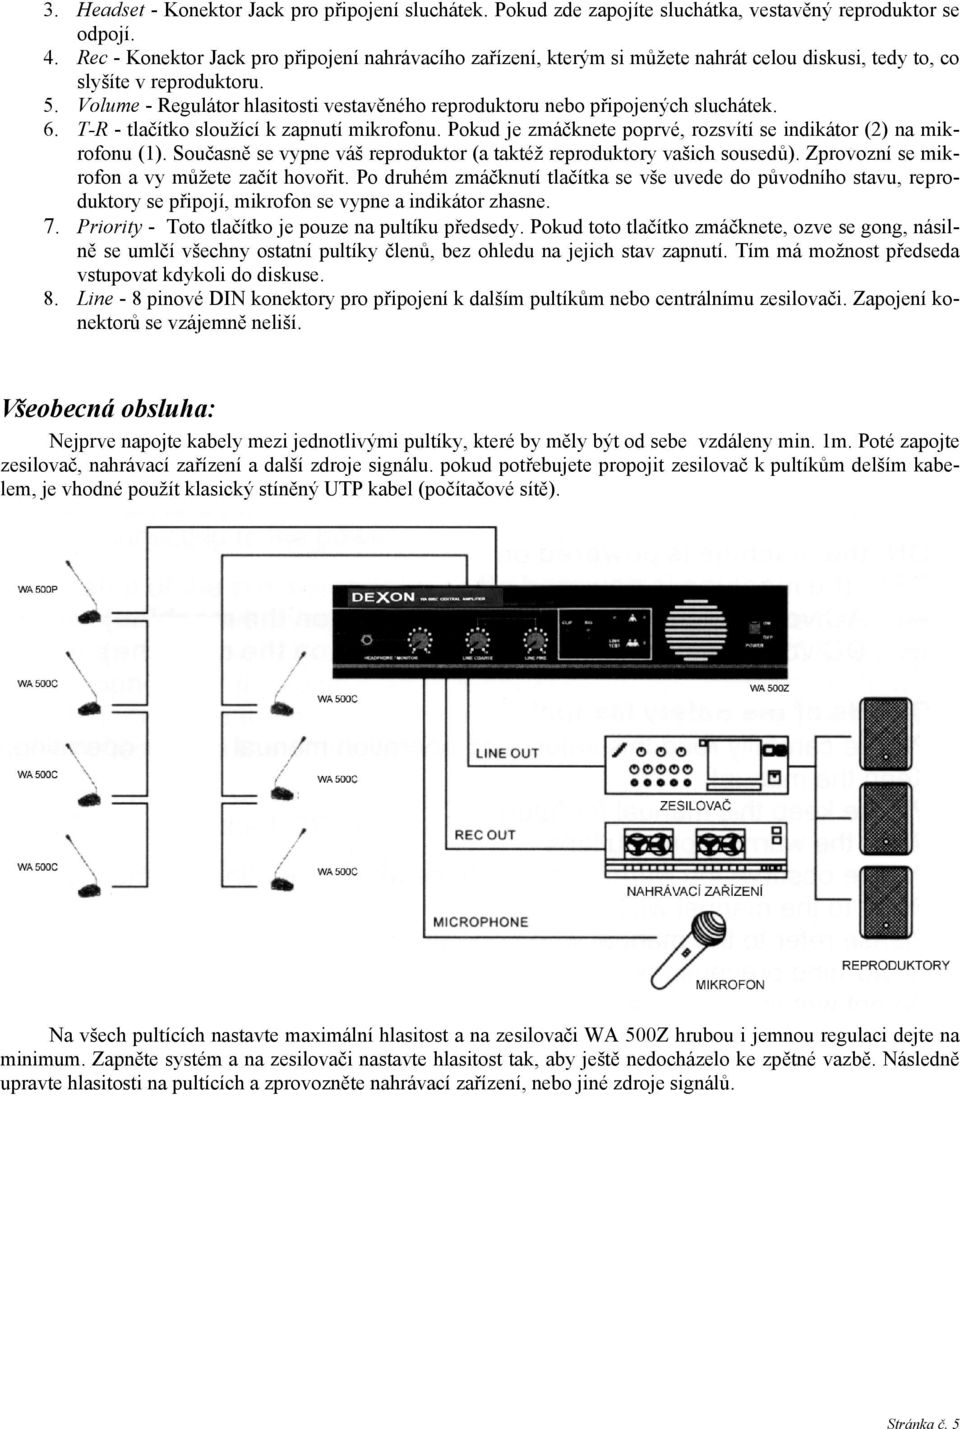 Volume - Regulátor hlasitosti vestavěného reproduktoru nebo připojených sluchátek. 6. T-R - tlačítko sloužící k zapnutí mikrofonu.